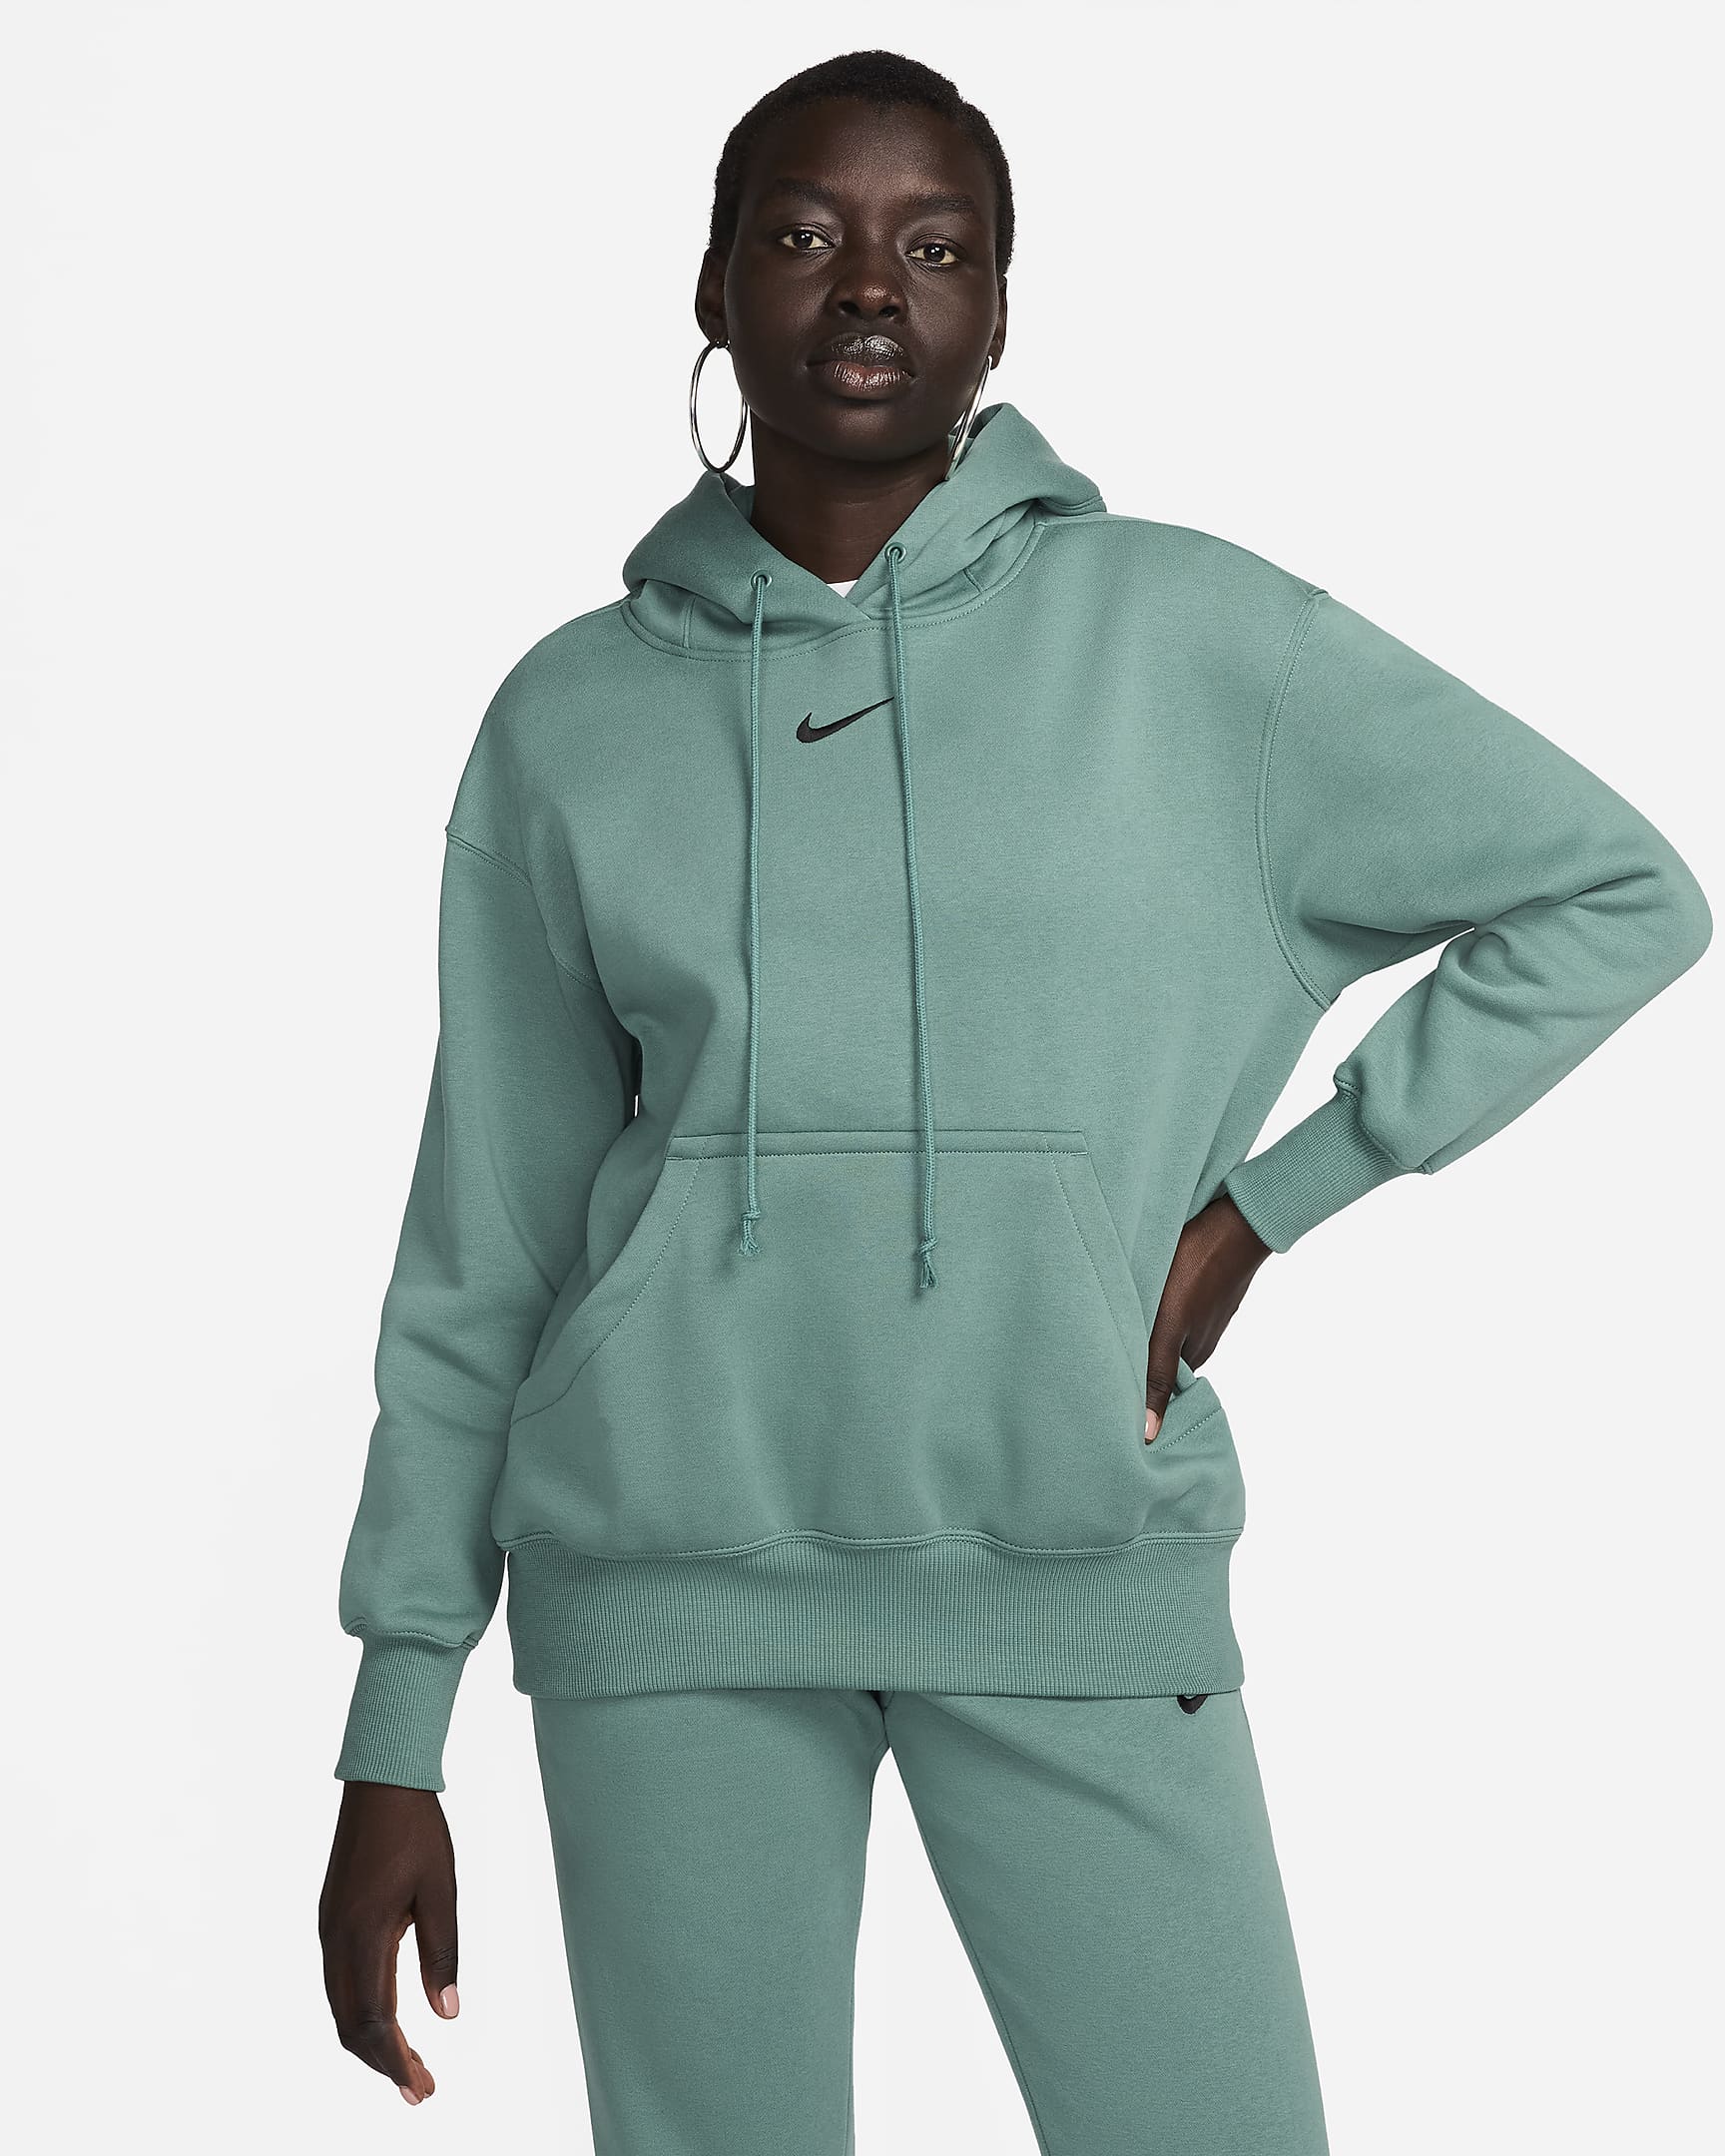 Nike Sportswear Phoenix Fleece Women's Oversized Pullover Hoodie - Bicoastal/Black